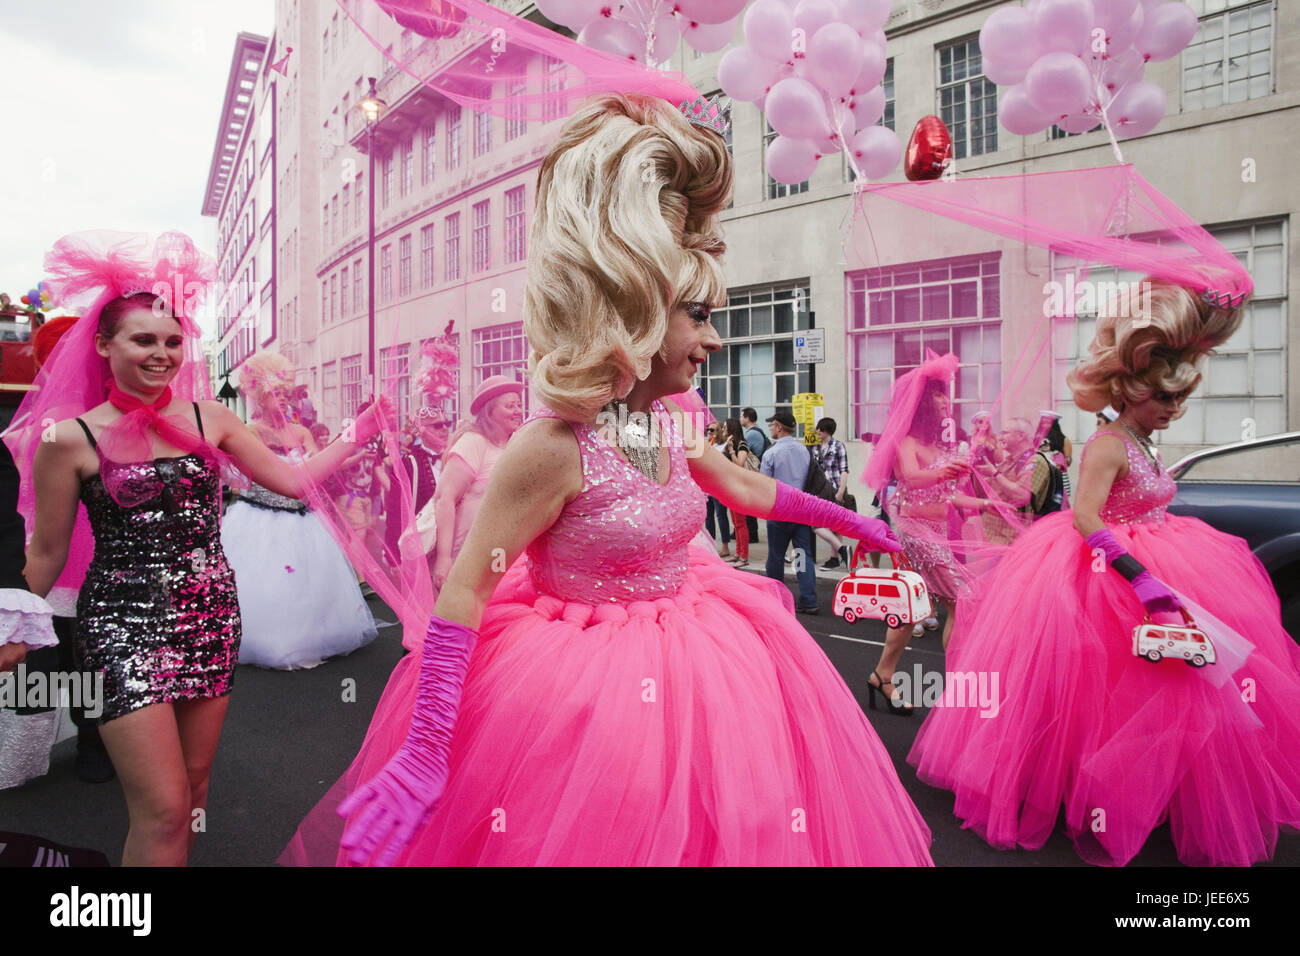 Inghilterra, Londra Gay Pride Parade, persone abiti rosa, città, festival, salvare, omosessuale, rosa, parrucche, pannelli, la visualizzazione della telecamera, fatta, sorriso, uomini, donne, vai street, andare felicemente, processione, Foto Stock